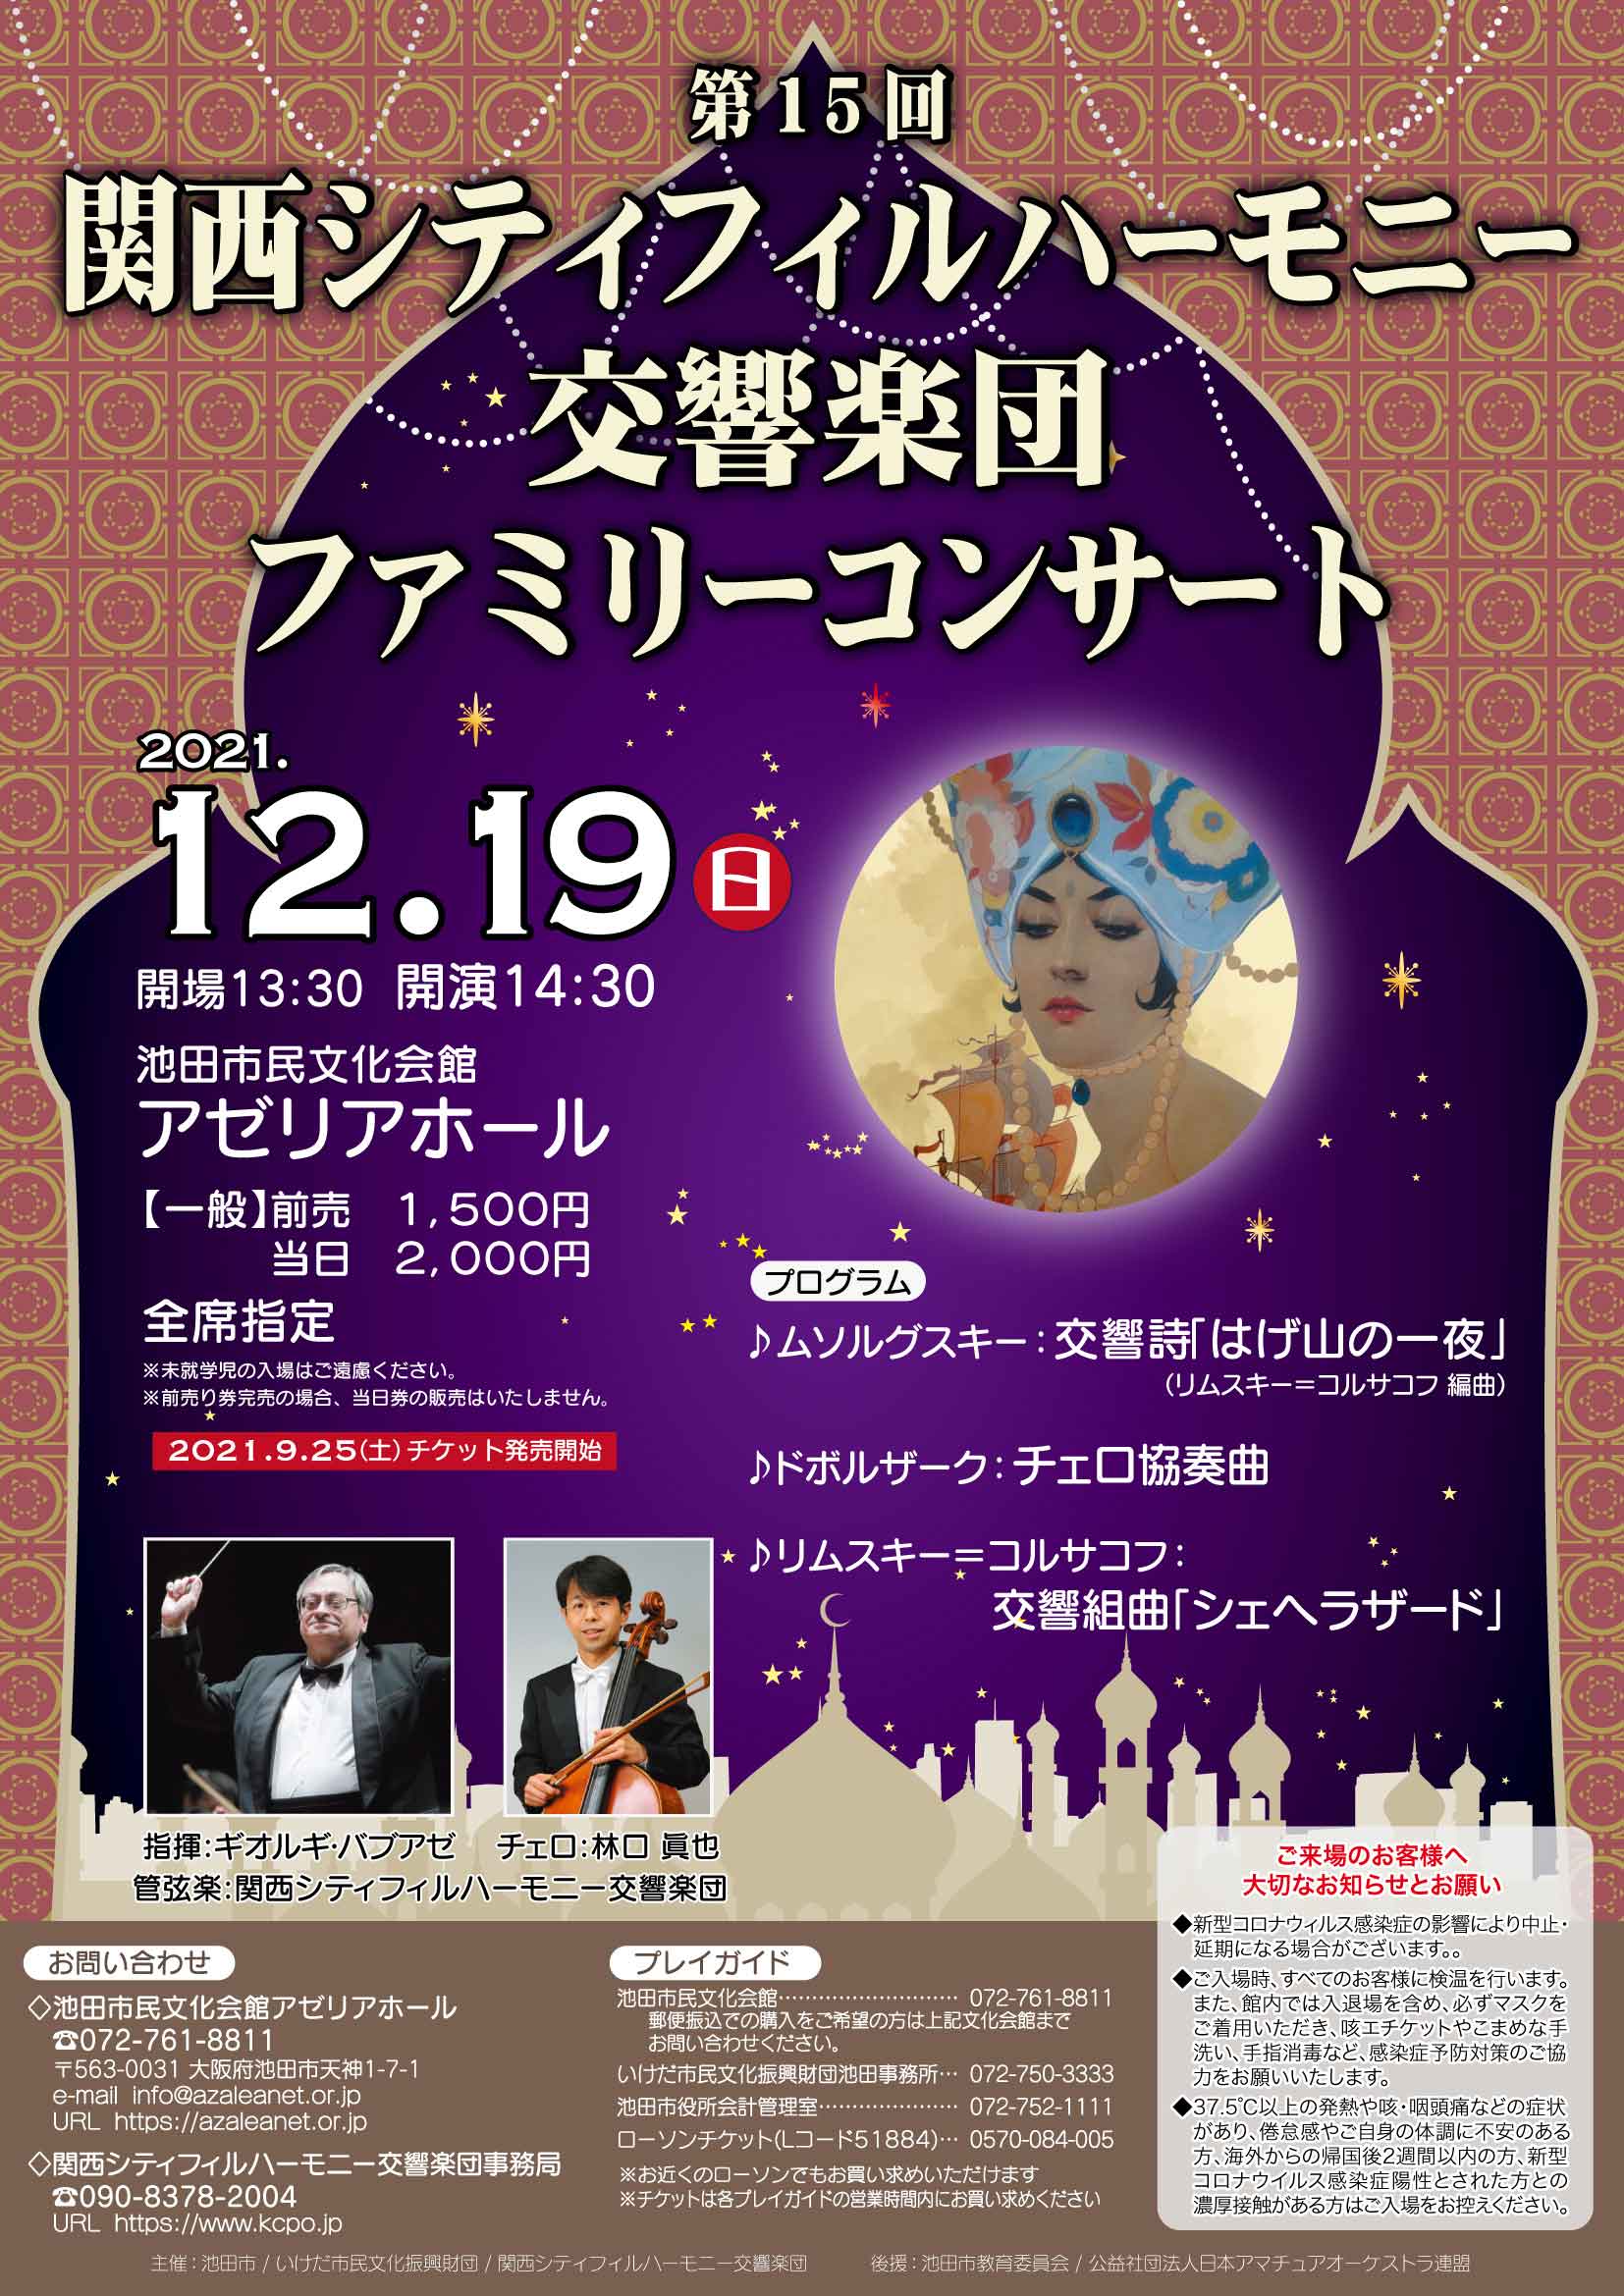 関西シティフィルハーモニー交響楽団第15回ファミリーコンサート（再延期公演）のフライヤー画像